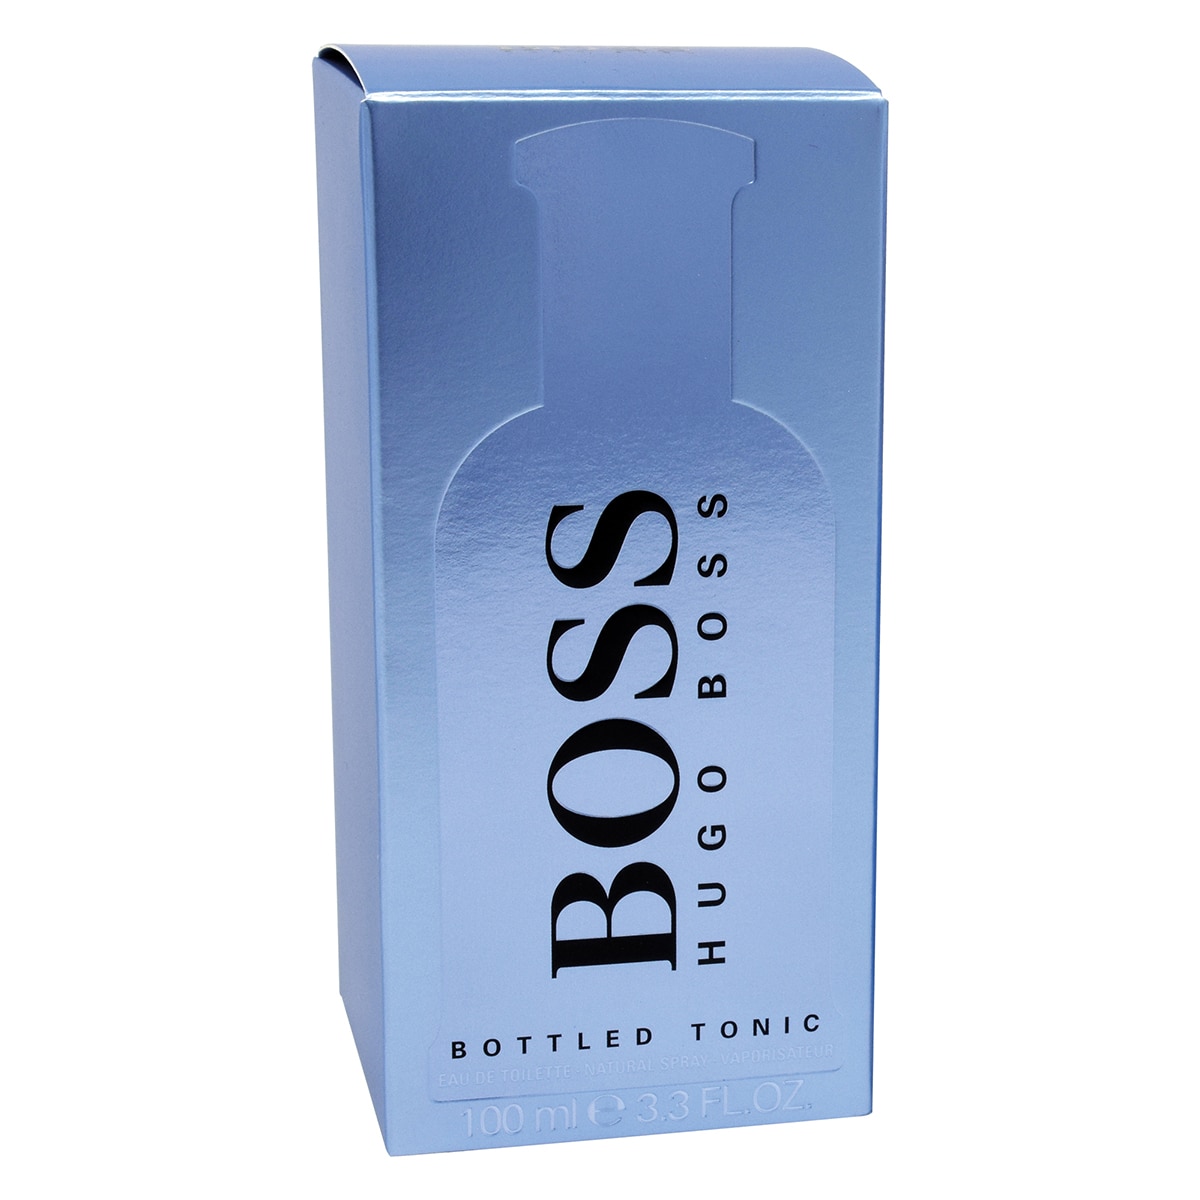 Hugo Boss Bottled Tonic 100 ml 